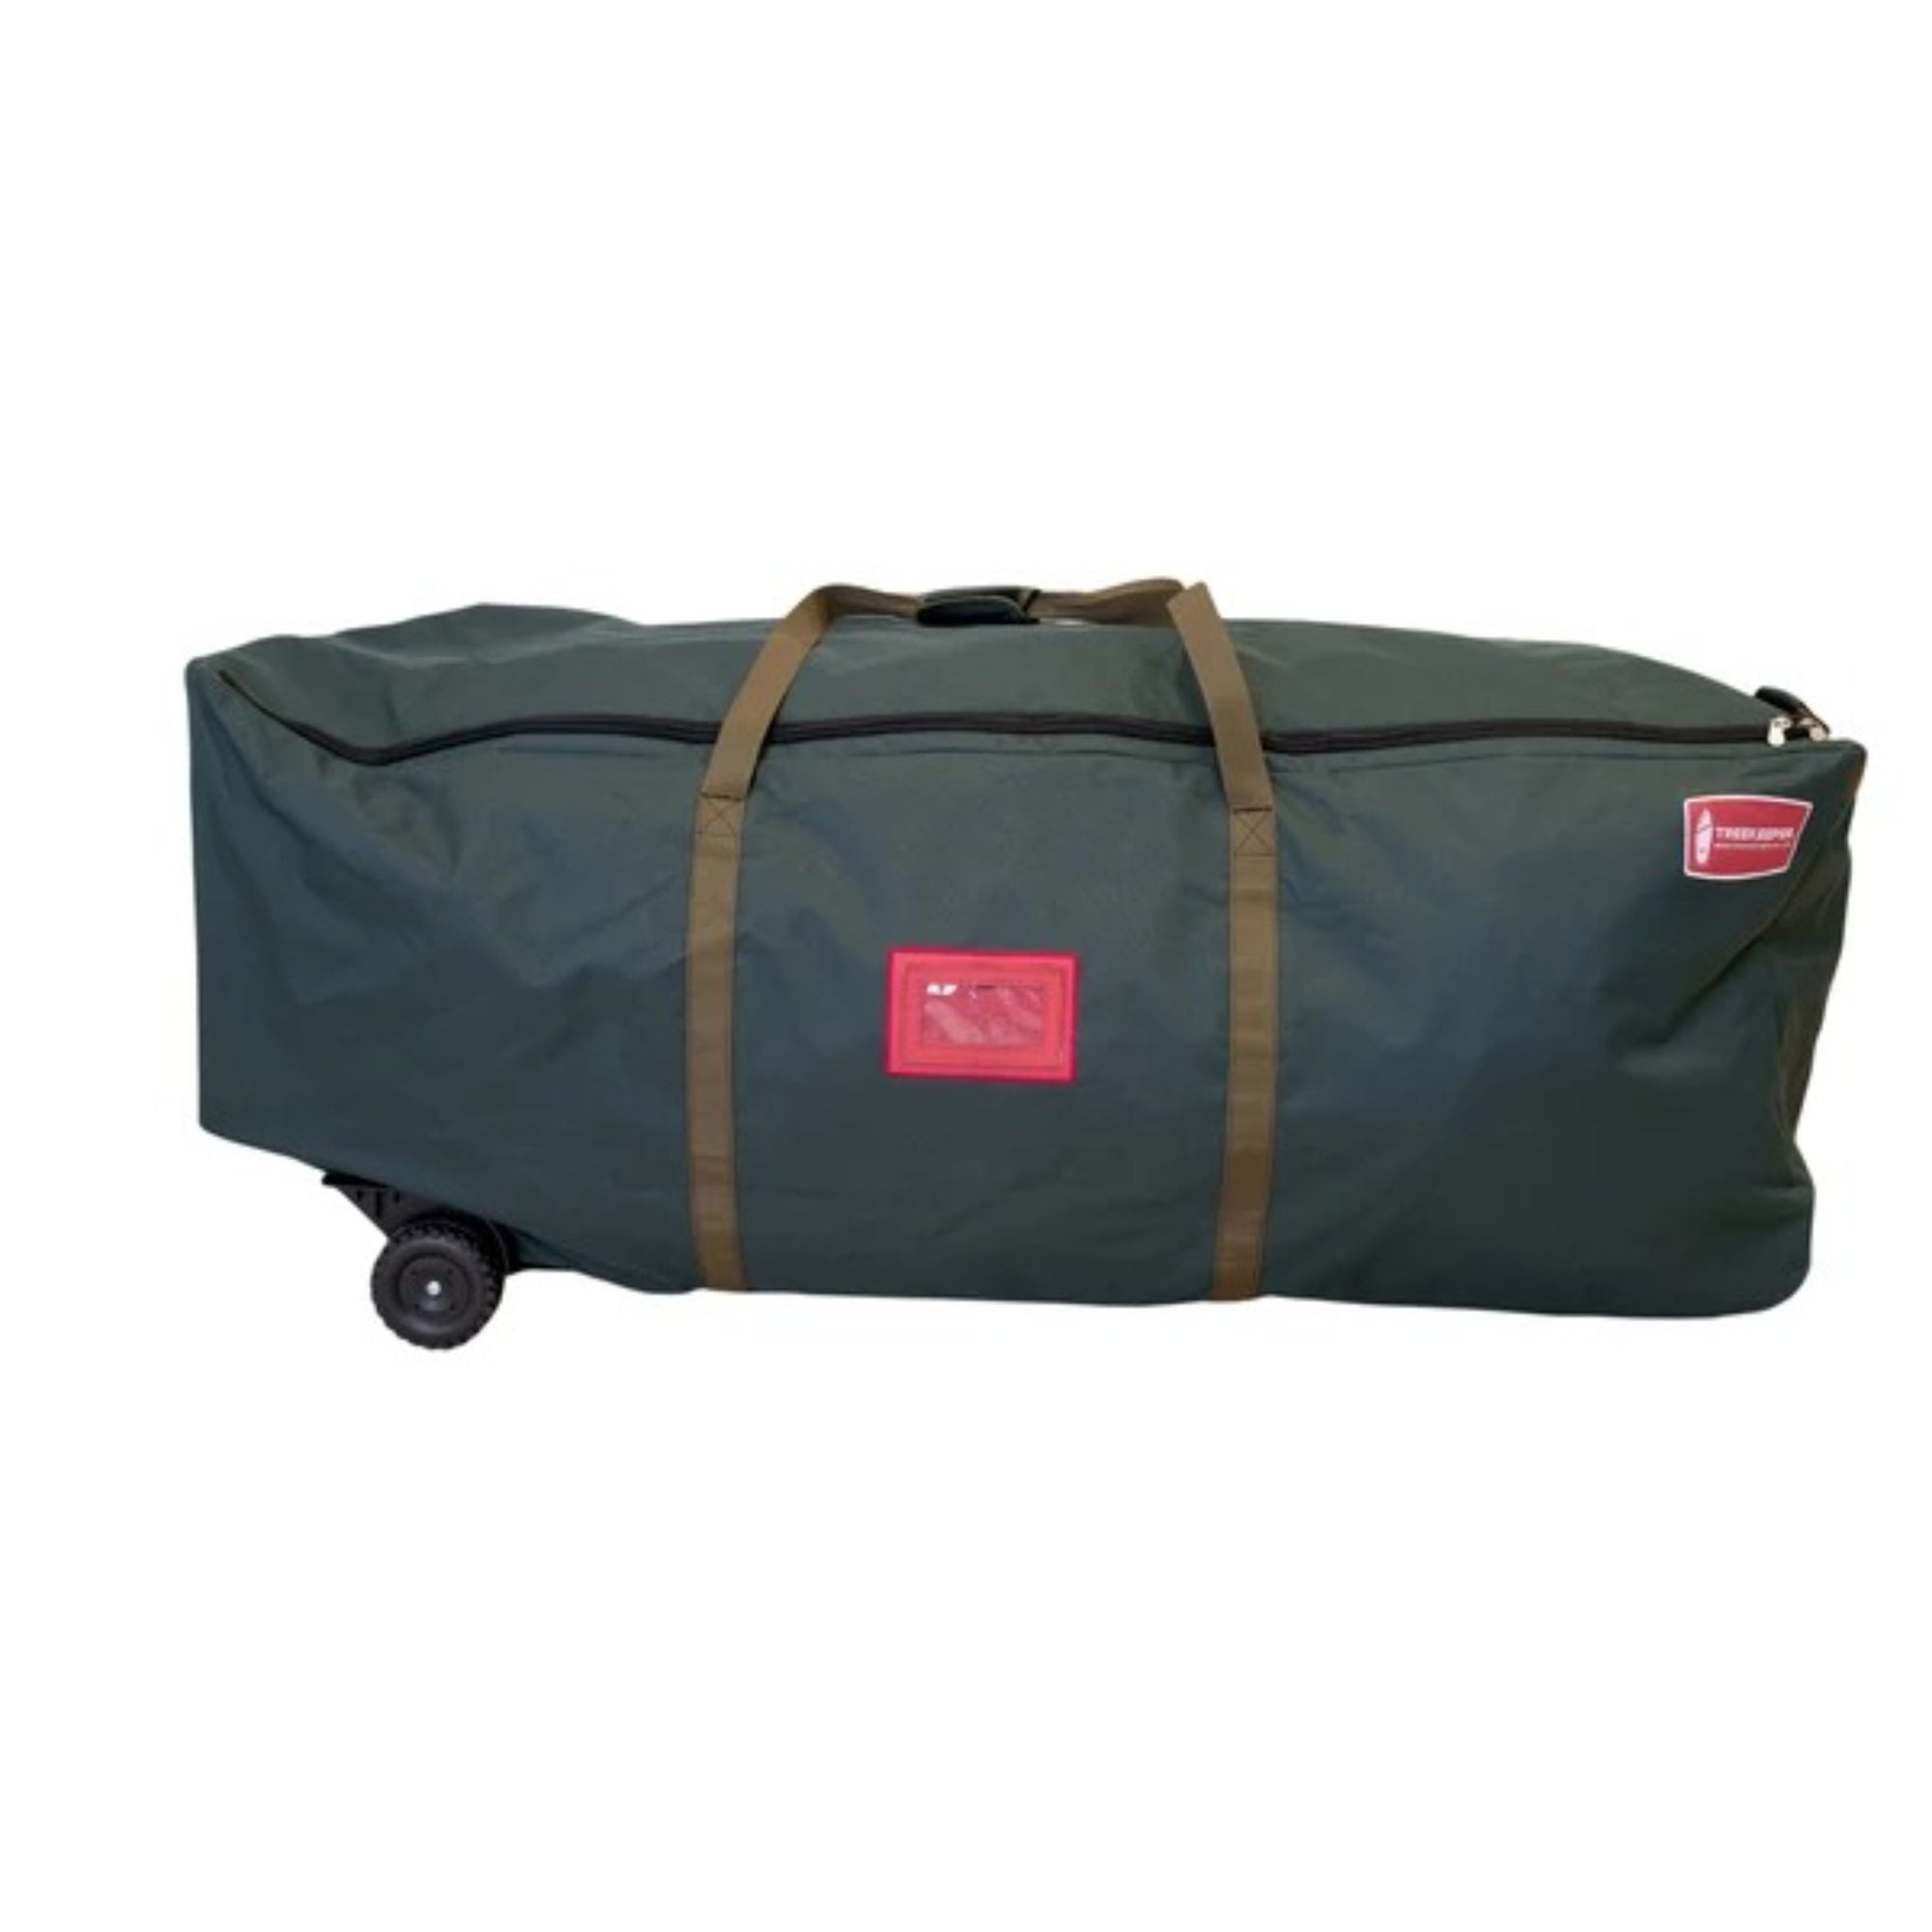 Essential Home Rolling Christmas Tree Storage Bag W/ Wheels 58 x 24 x 24 